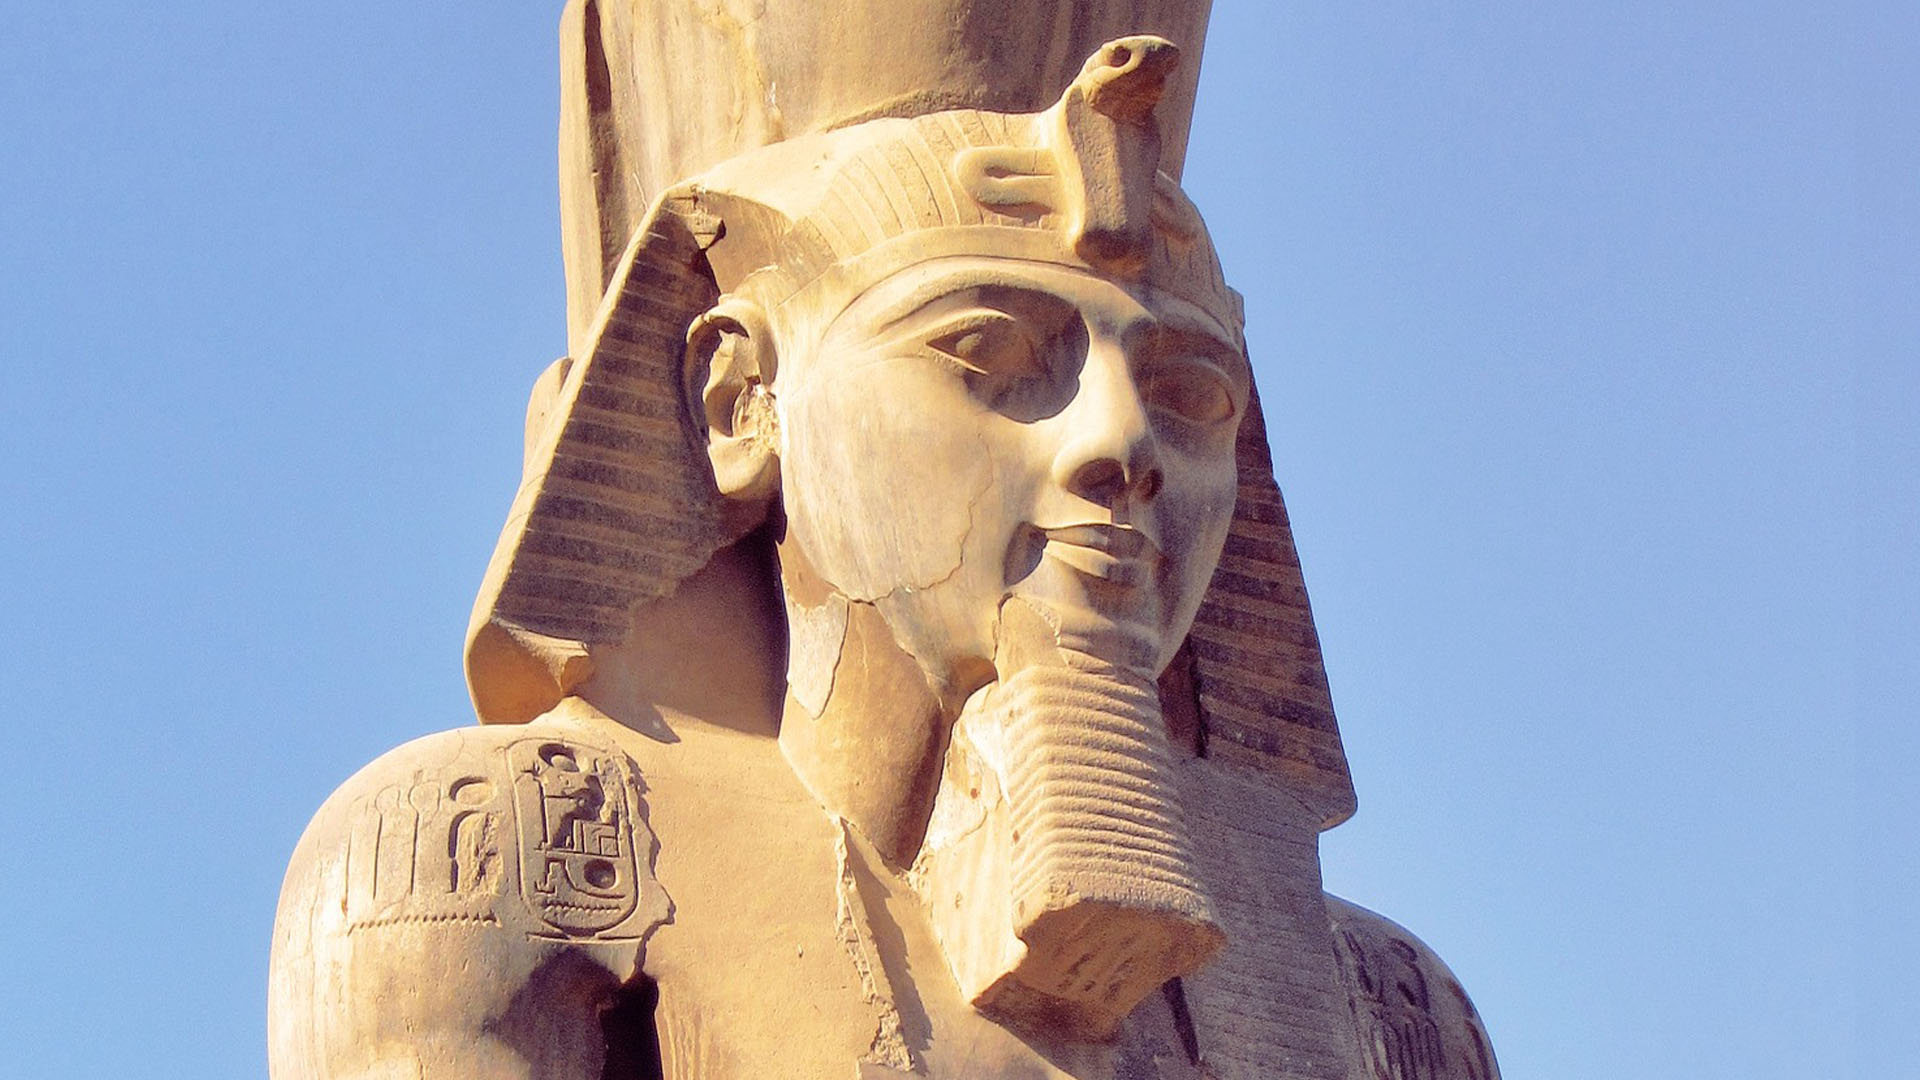 The Pharaoh's Headdress and the Ancient Egyptian Gods